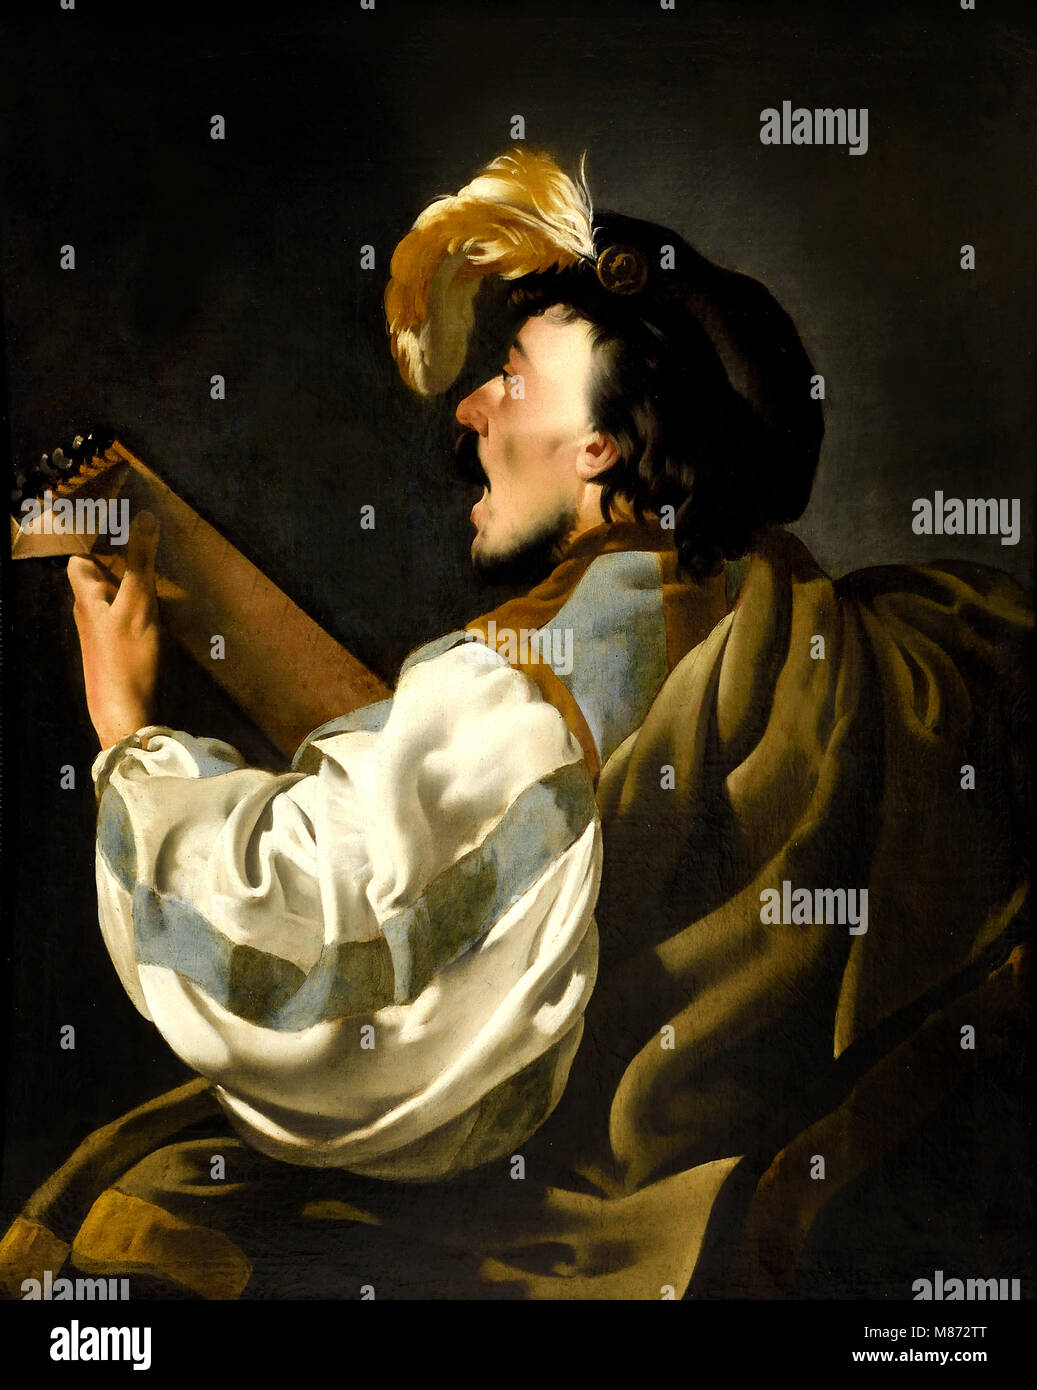 Un homme chantant et jouant un luth 1624 Hendrick ter Brugghen 1588 - 1629 Le Néerlandais Pays-Bas Banque D'Images